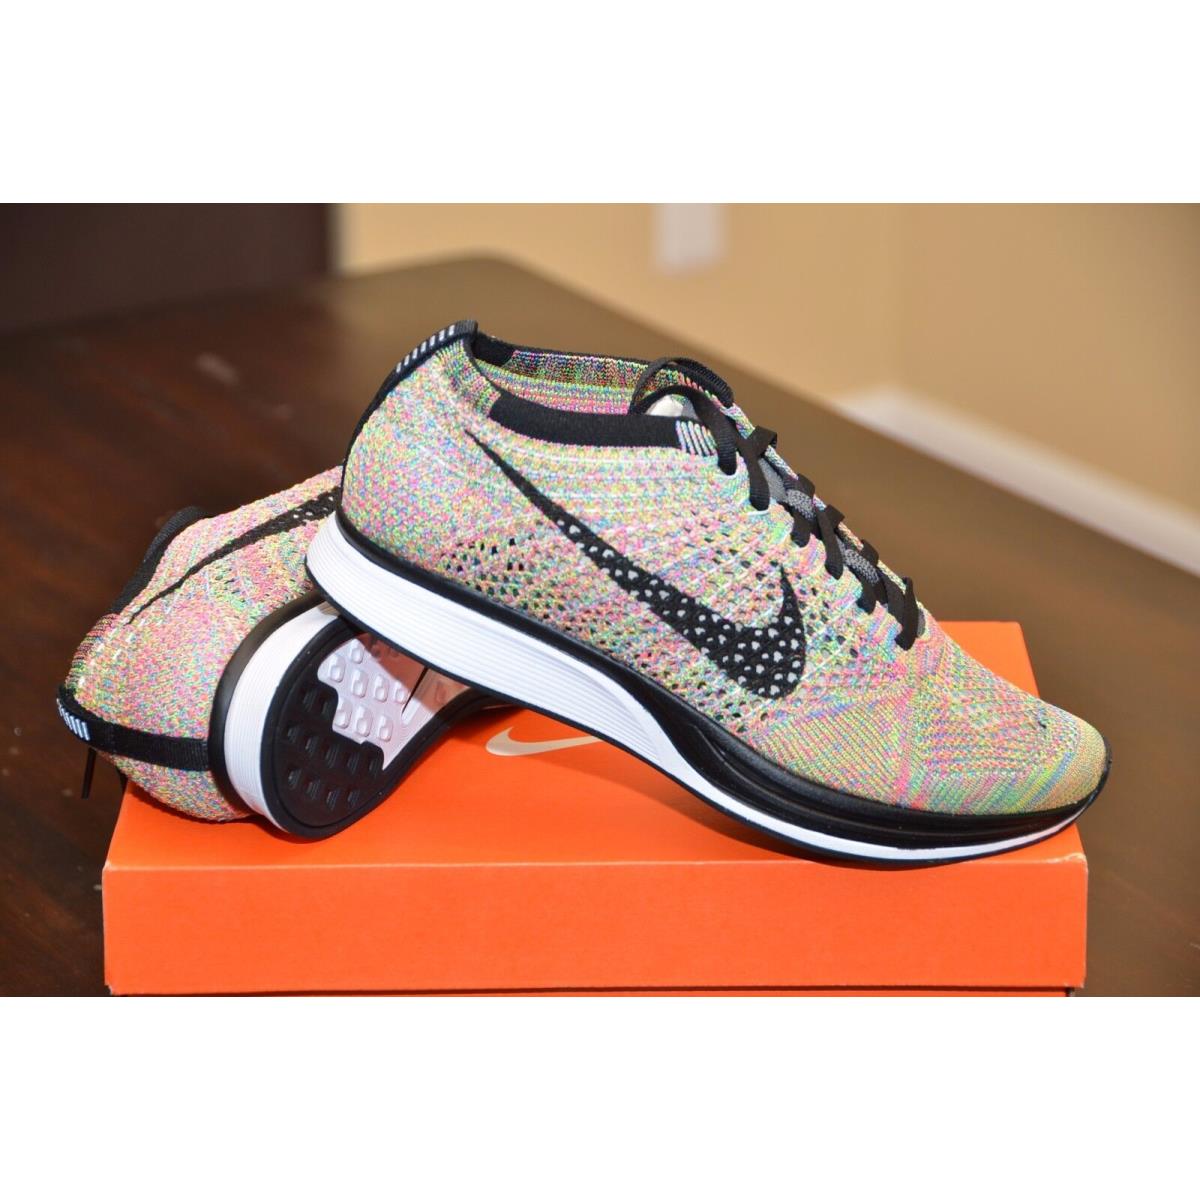 Nike Flyknit Racer Multicolor Dark Grey/blk BL Glow Pink 526628 004 Running Shoe